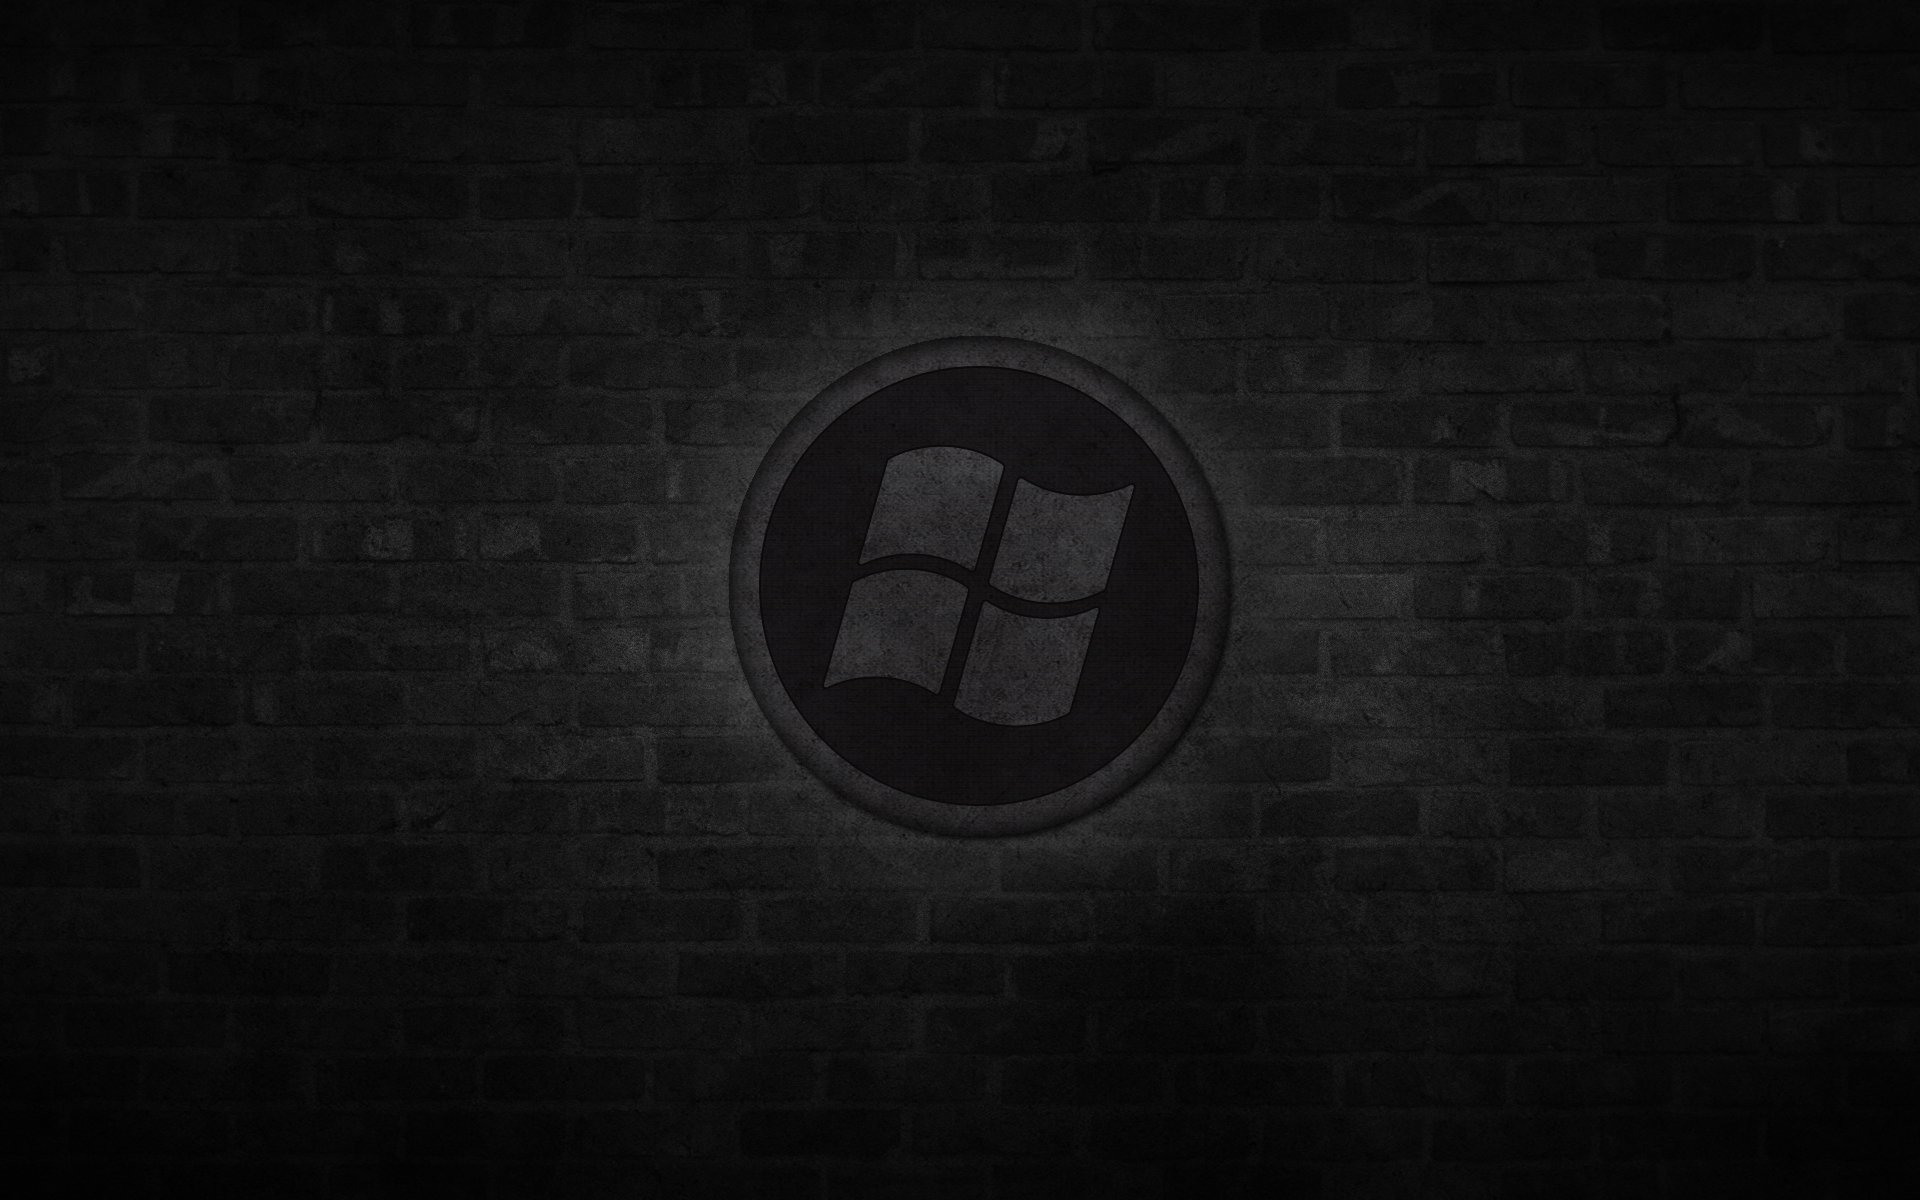 окна лого логотип темноватый фон круг черный стена кирпич